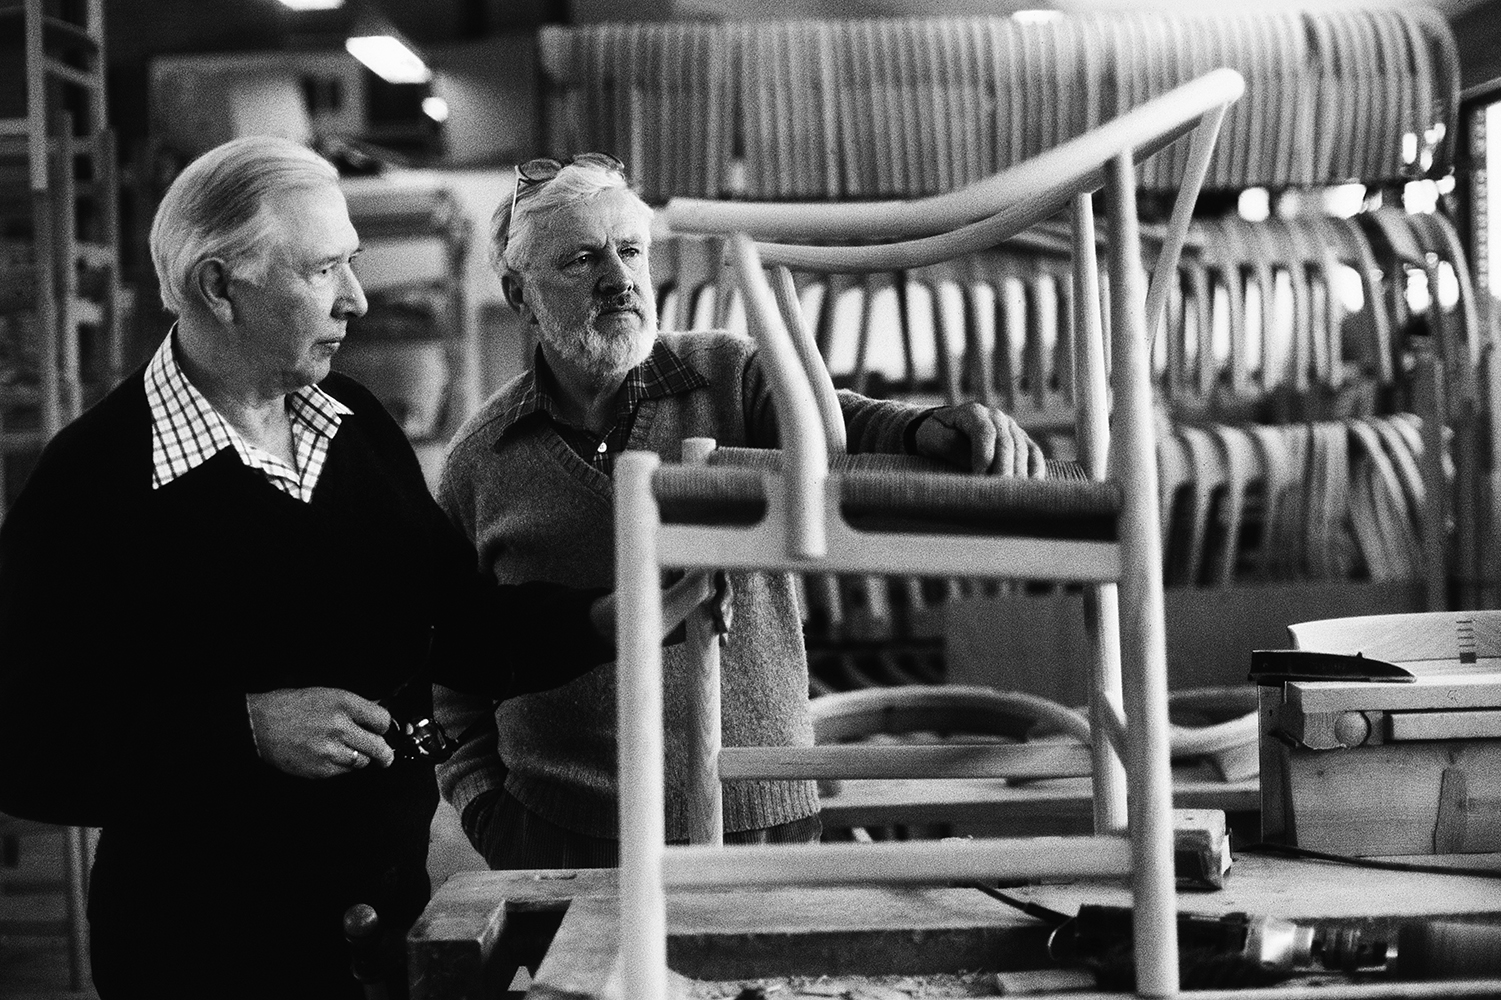 Arkitekt Hans J. Wegner og møbelfabrikant Ejnar Pedersen har sammen fået overrakt møbelprisen 1980.